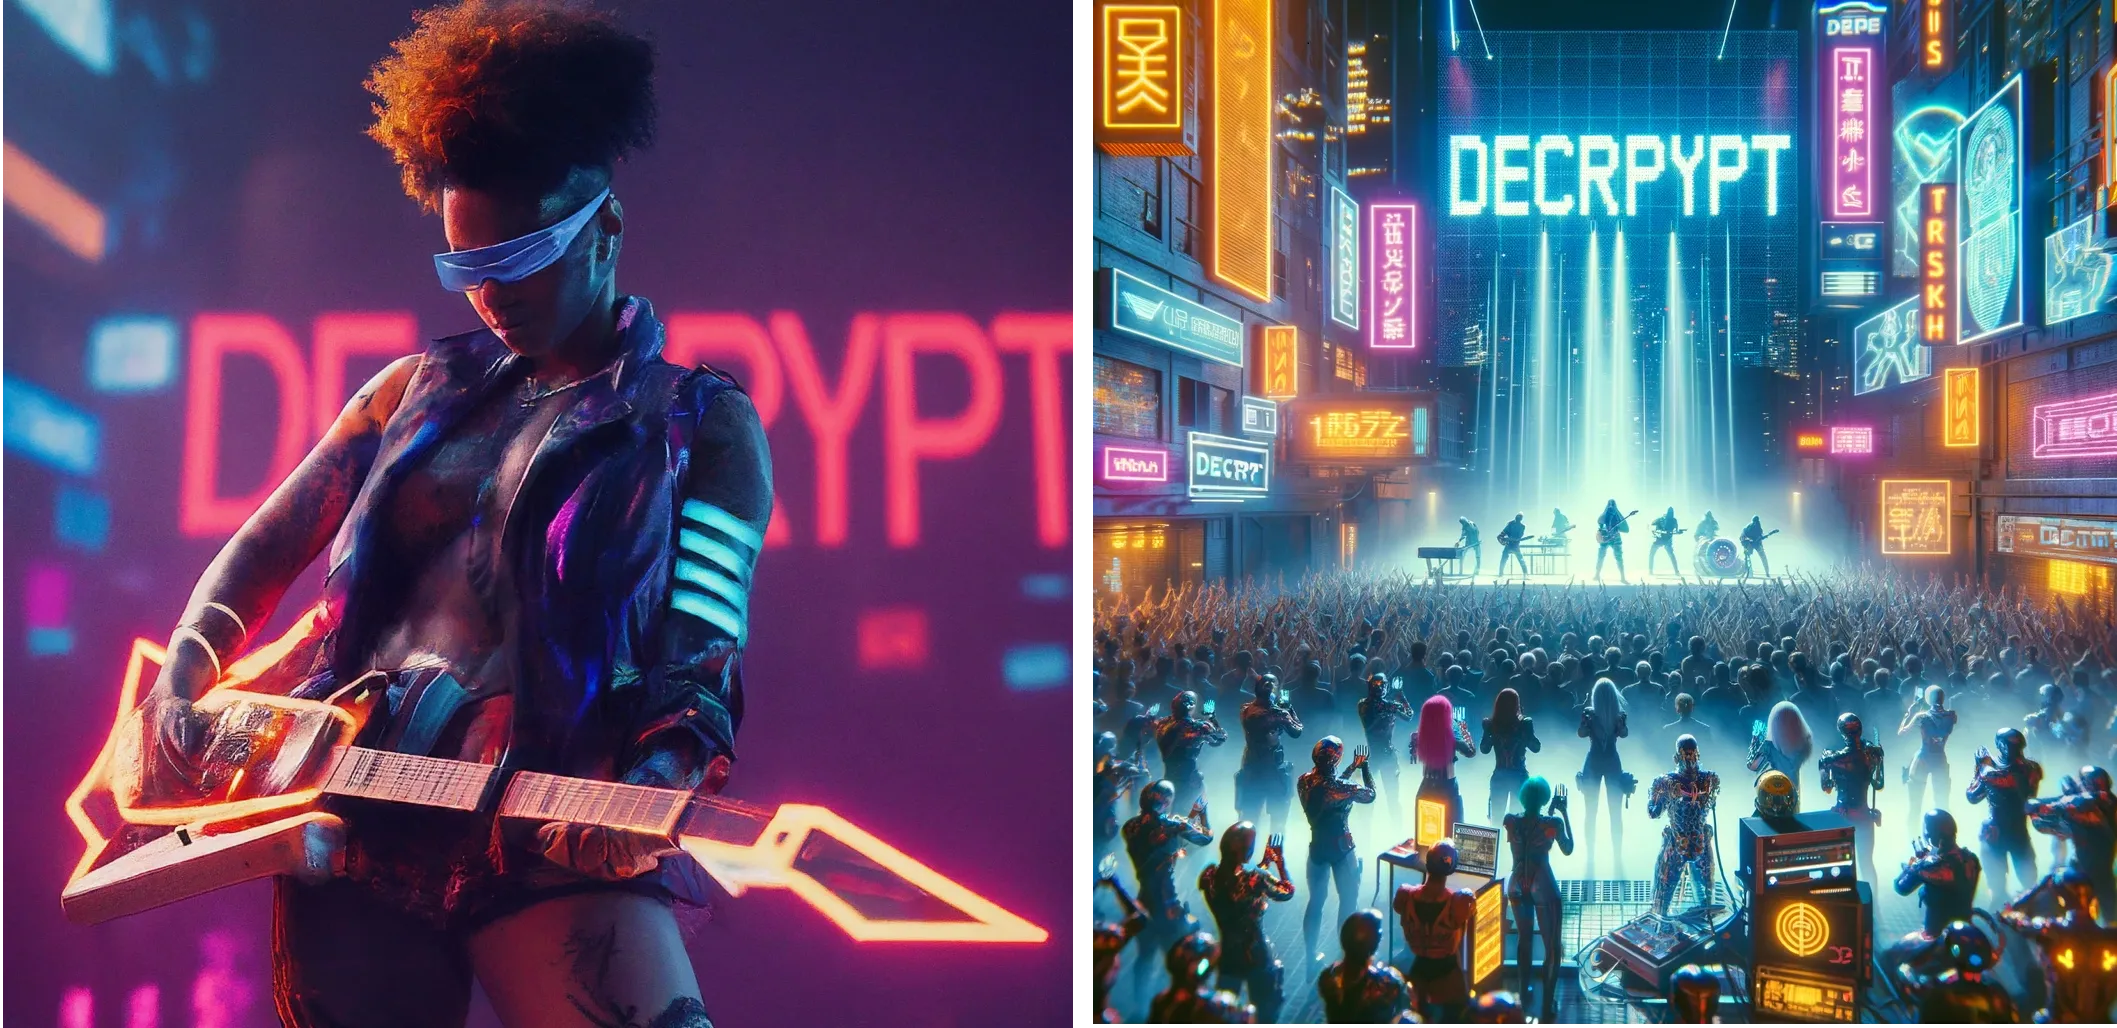 Artista futuristico cyberpunk che si esibisce sul palco con la parola "DECRYPT" illuminata al neon sullo sfondo. Gemini (a sinistra) vs ChatGPT Plus (a destra)